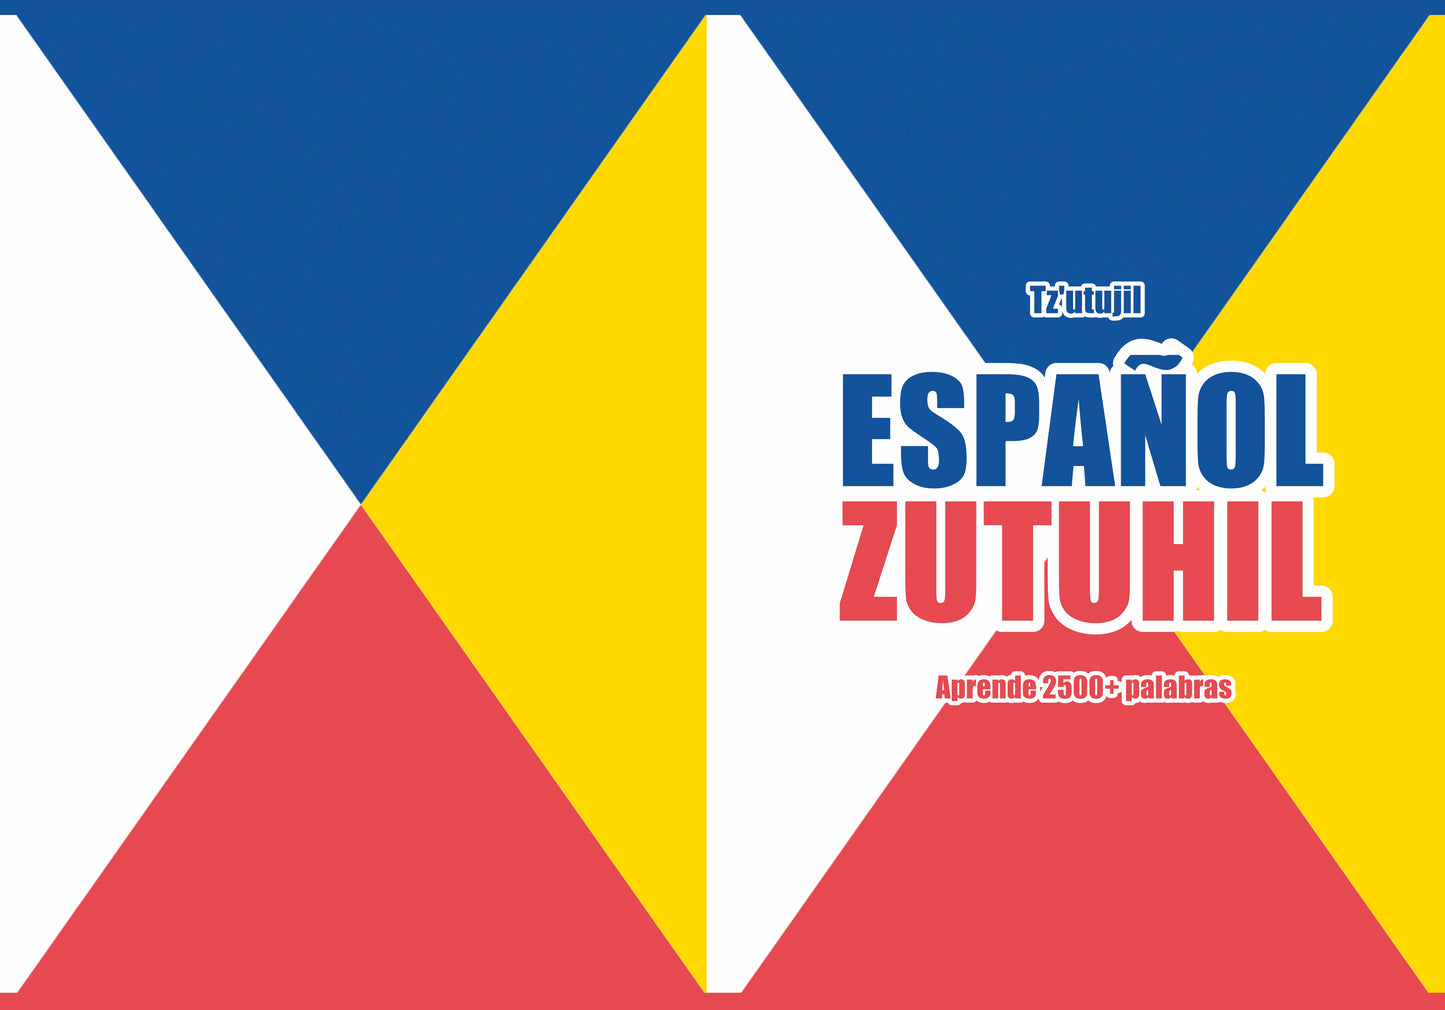 Español-zutuhil cuaderno de vocabulario